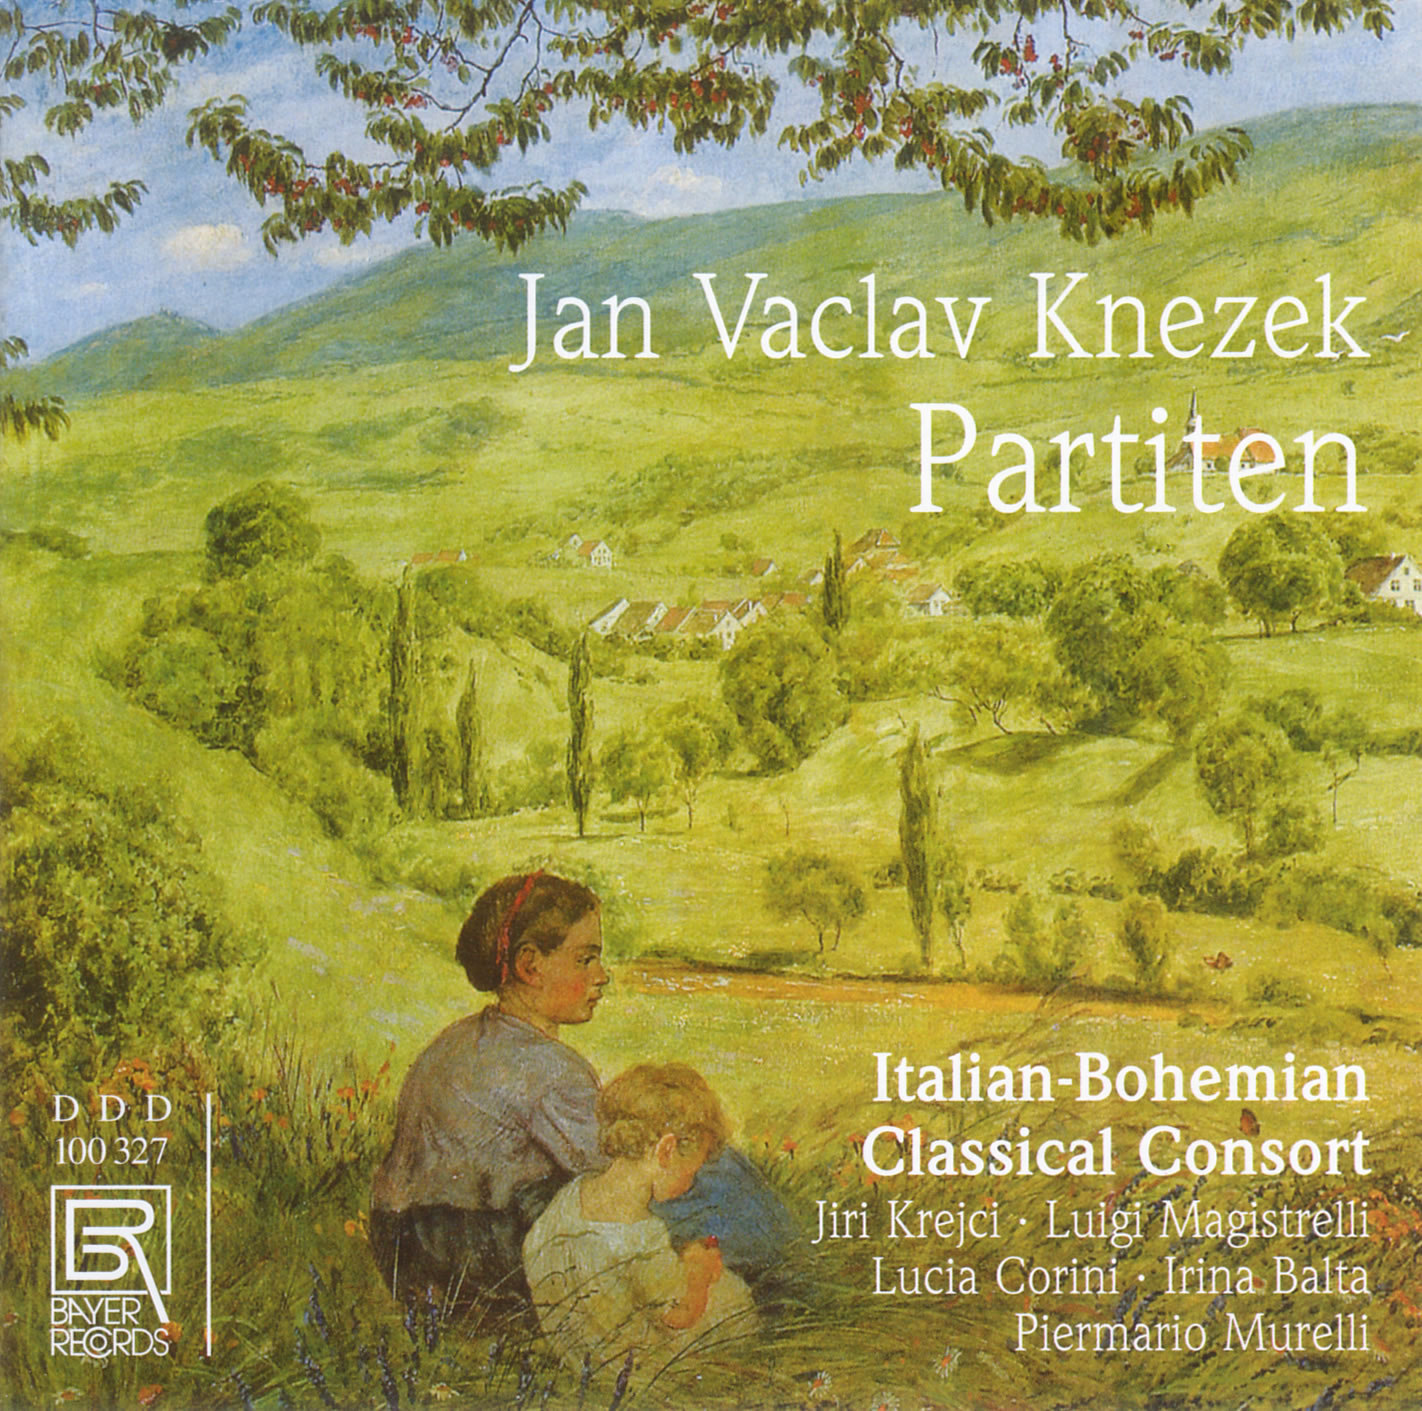 Jan Vaclav Knezek - Drei Partiten für zwei Klarinetten, zwei Violen und Kontrabaß 